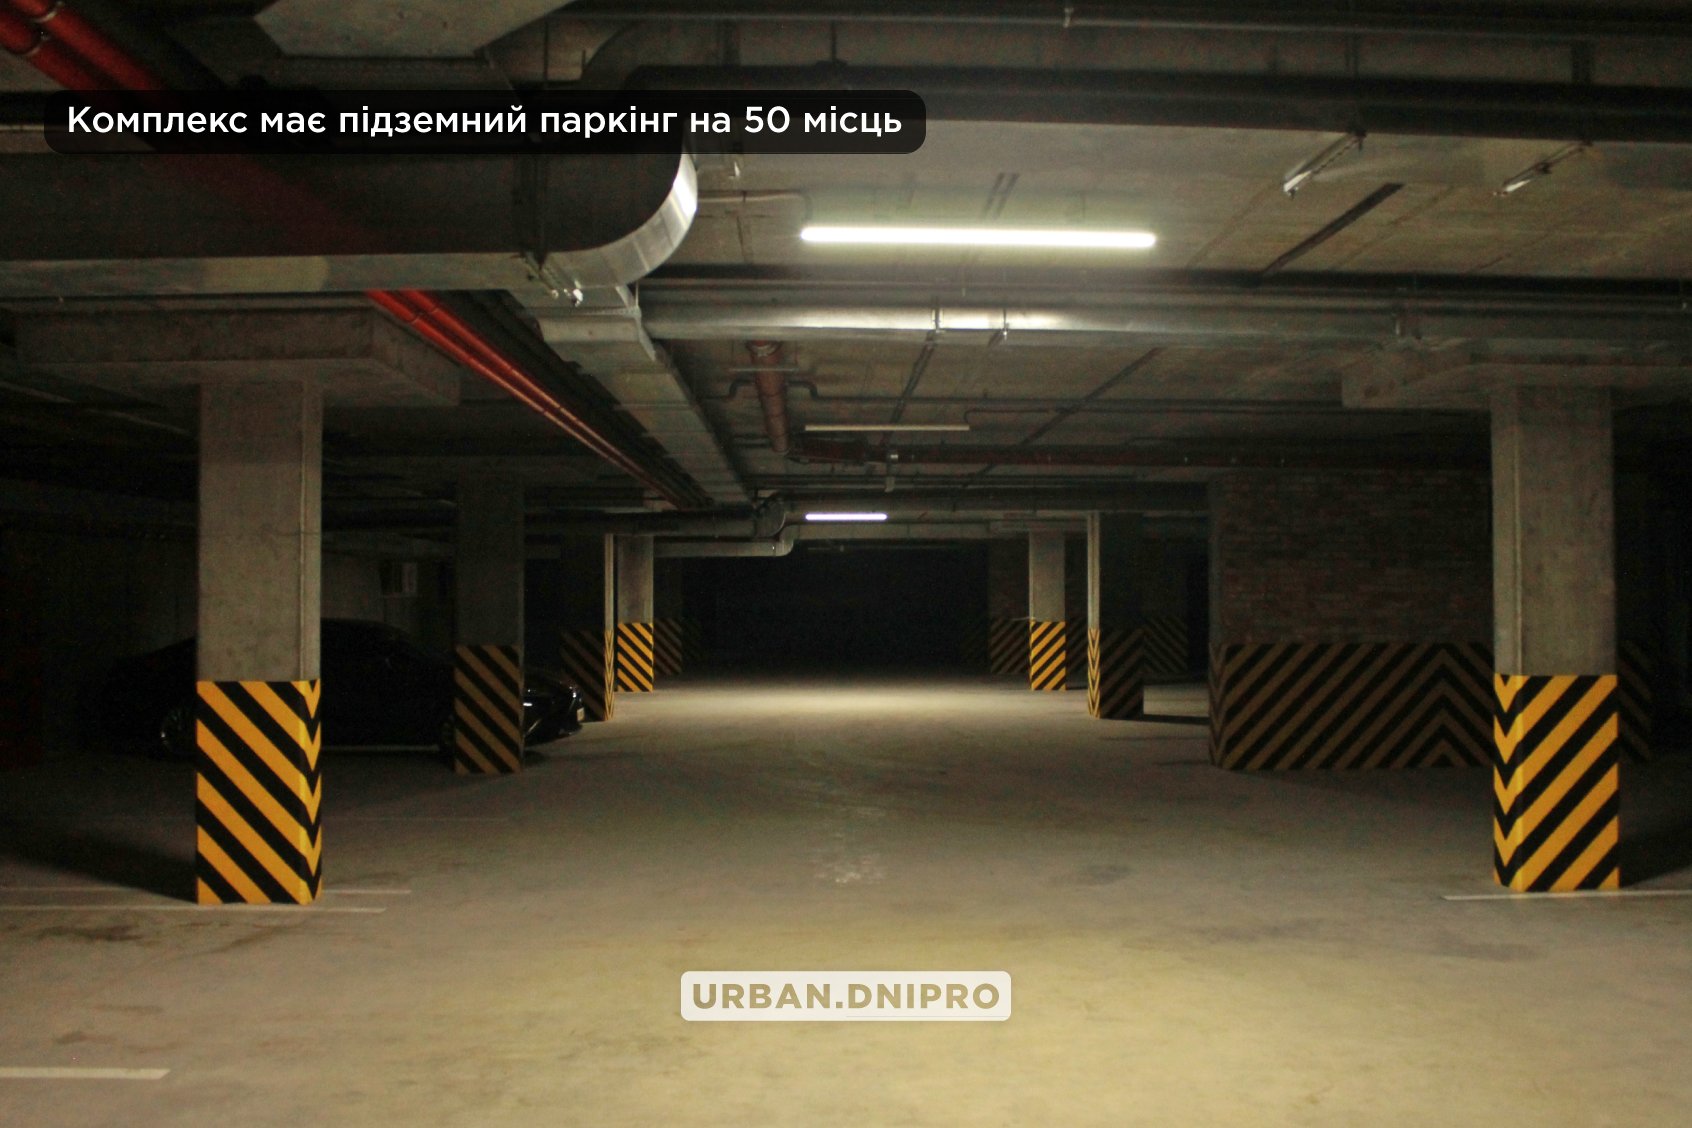 Комплекс має підземний паркінг - || фото: facebook.com/urban.dnipro